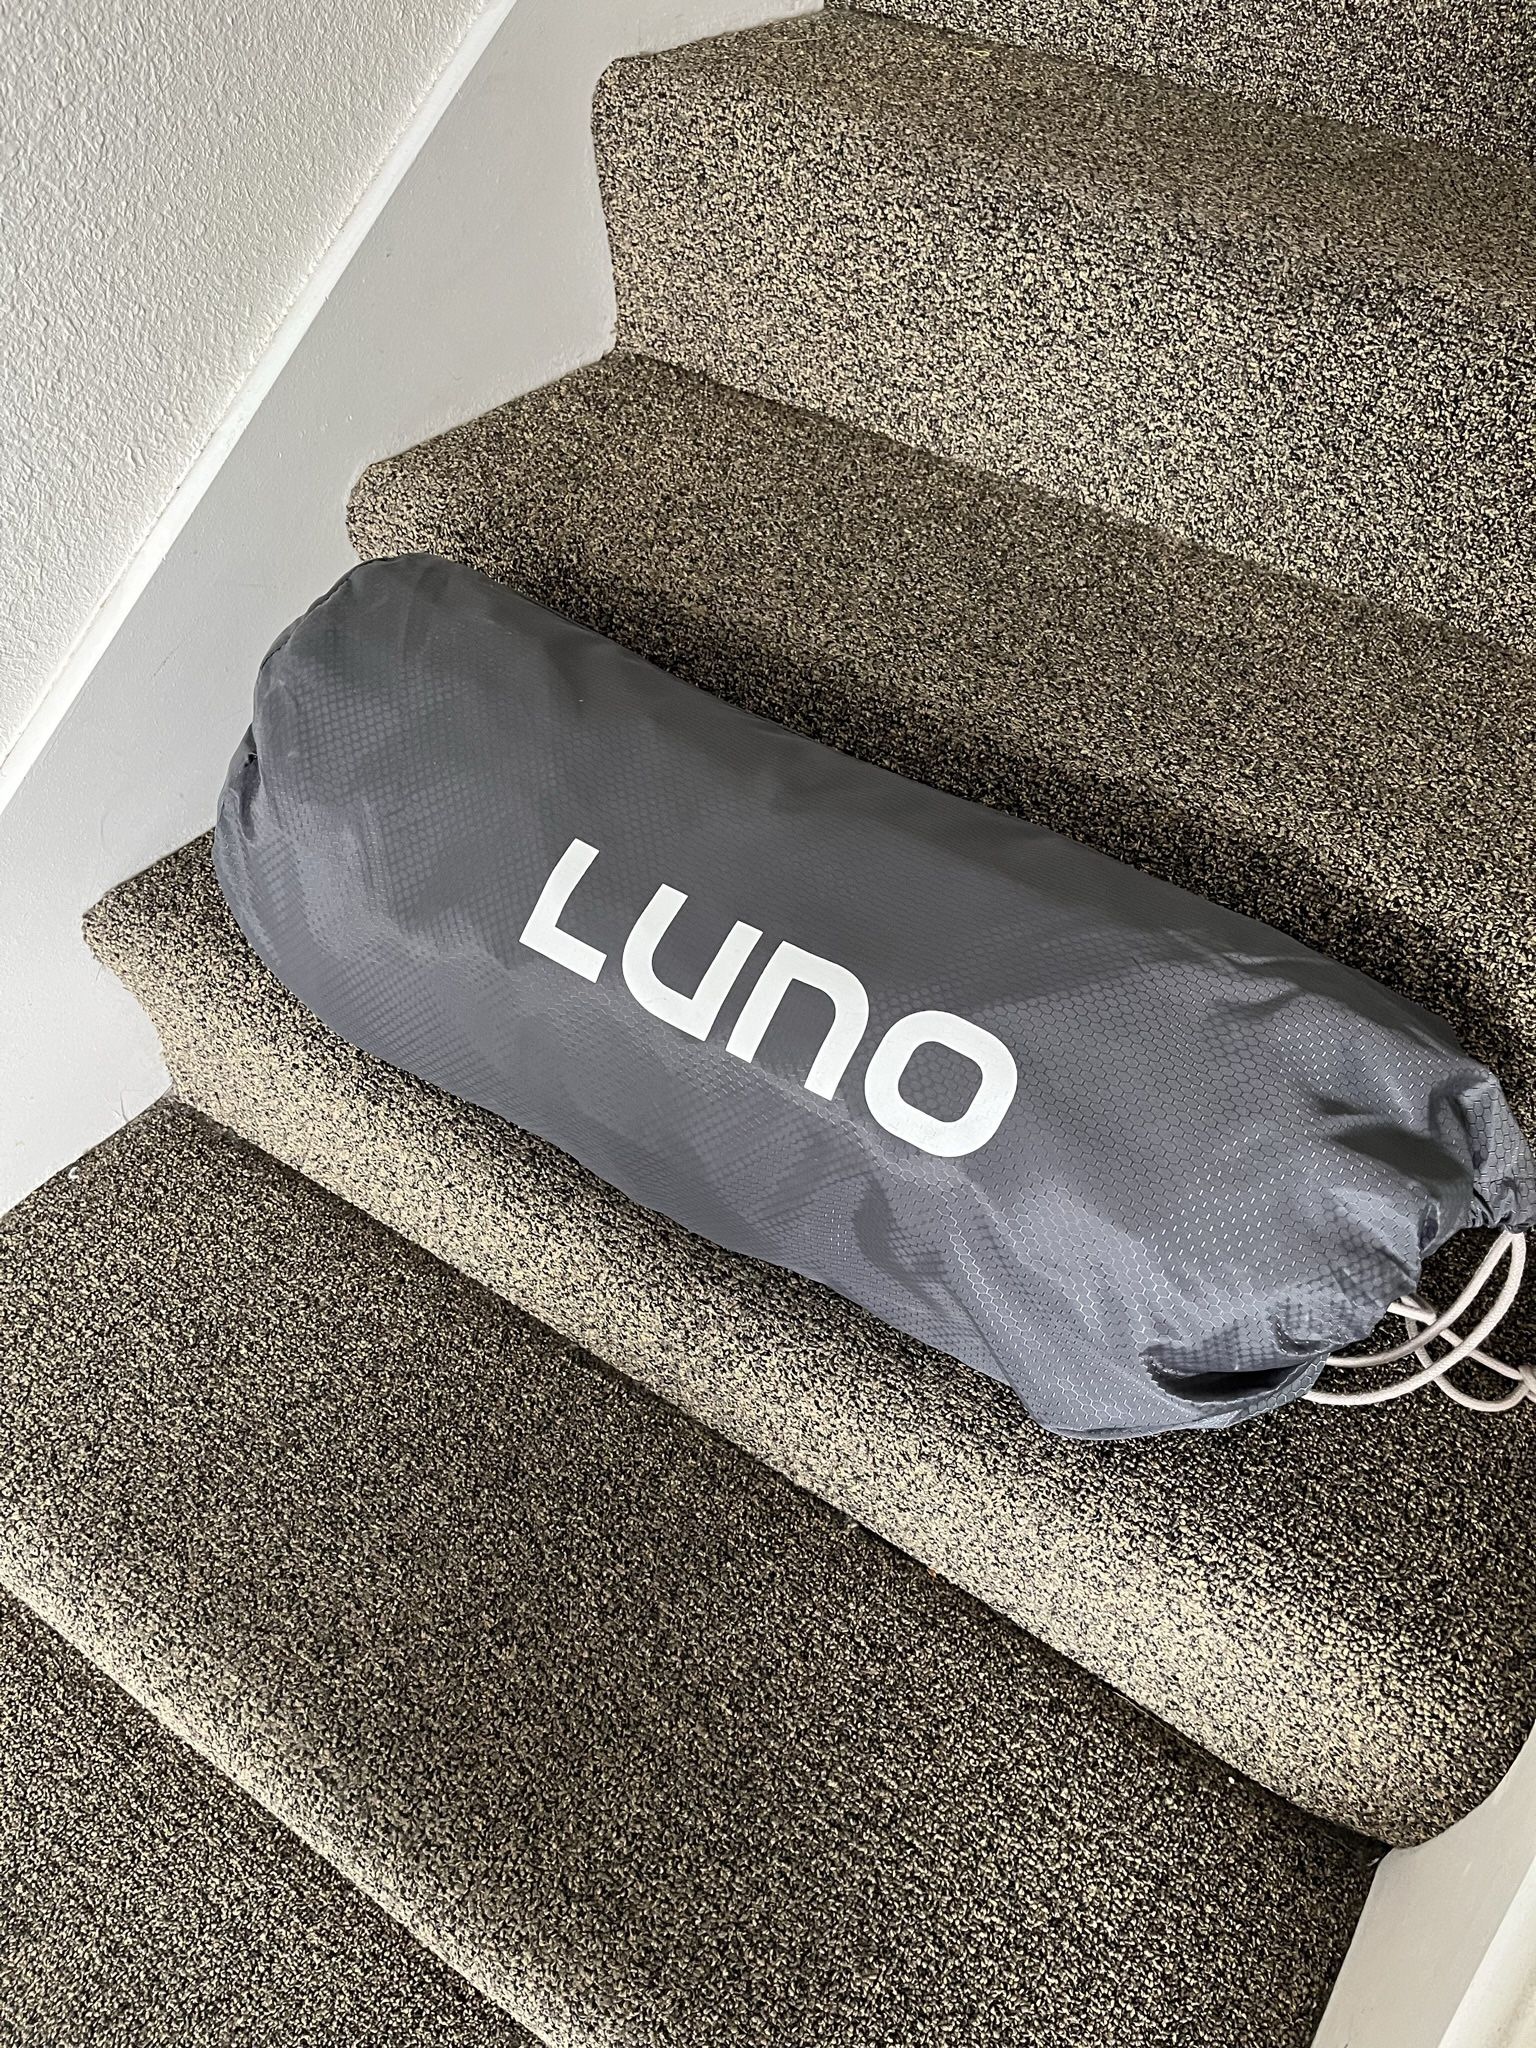 Luno Air Mattress Car Camping